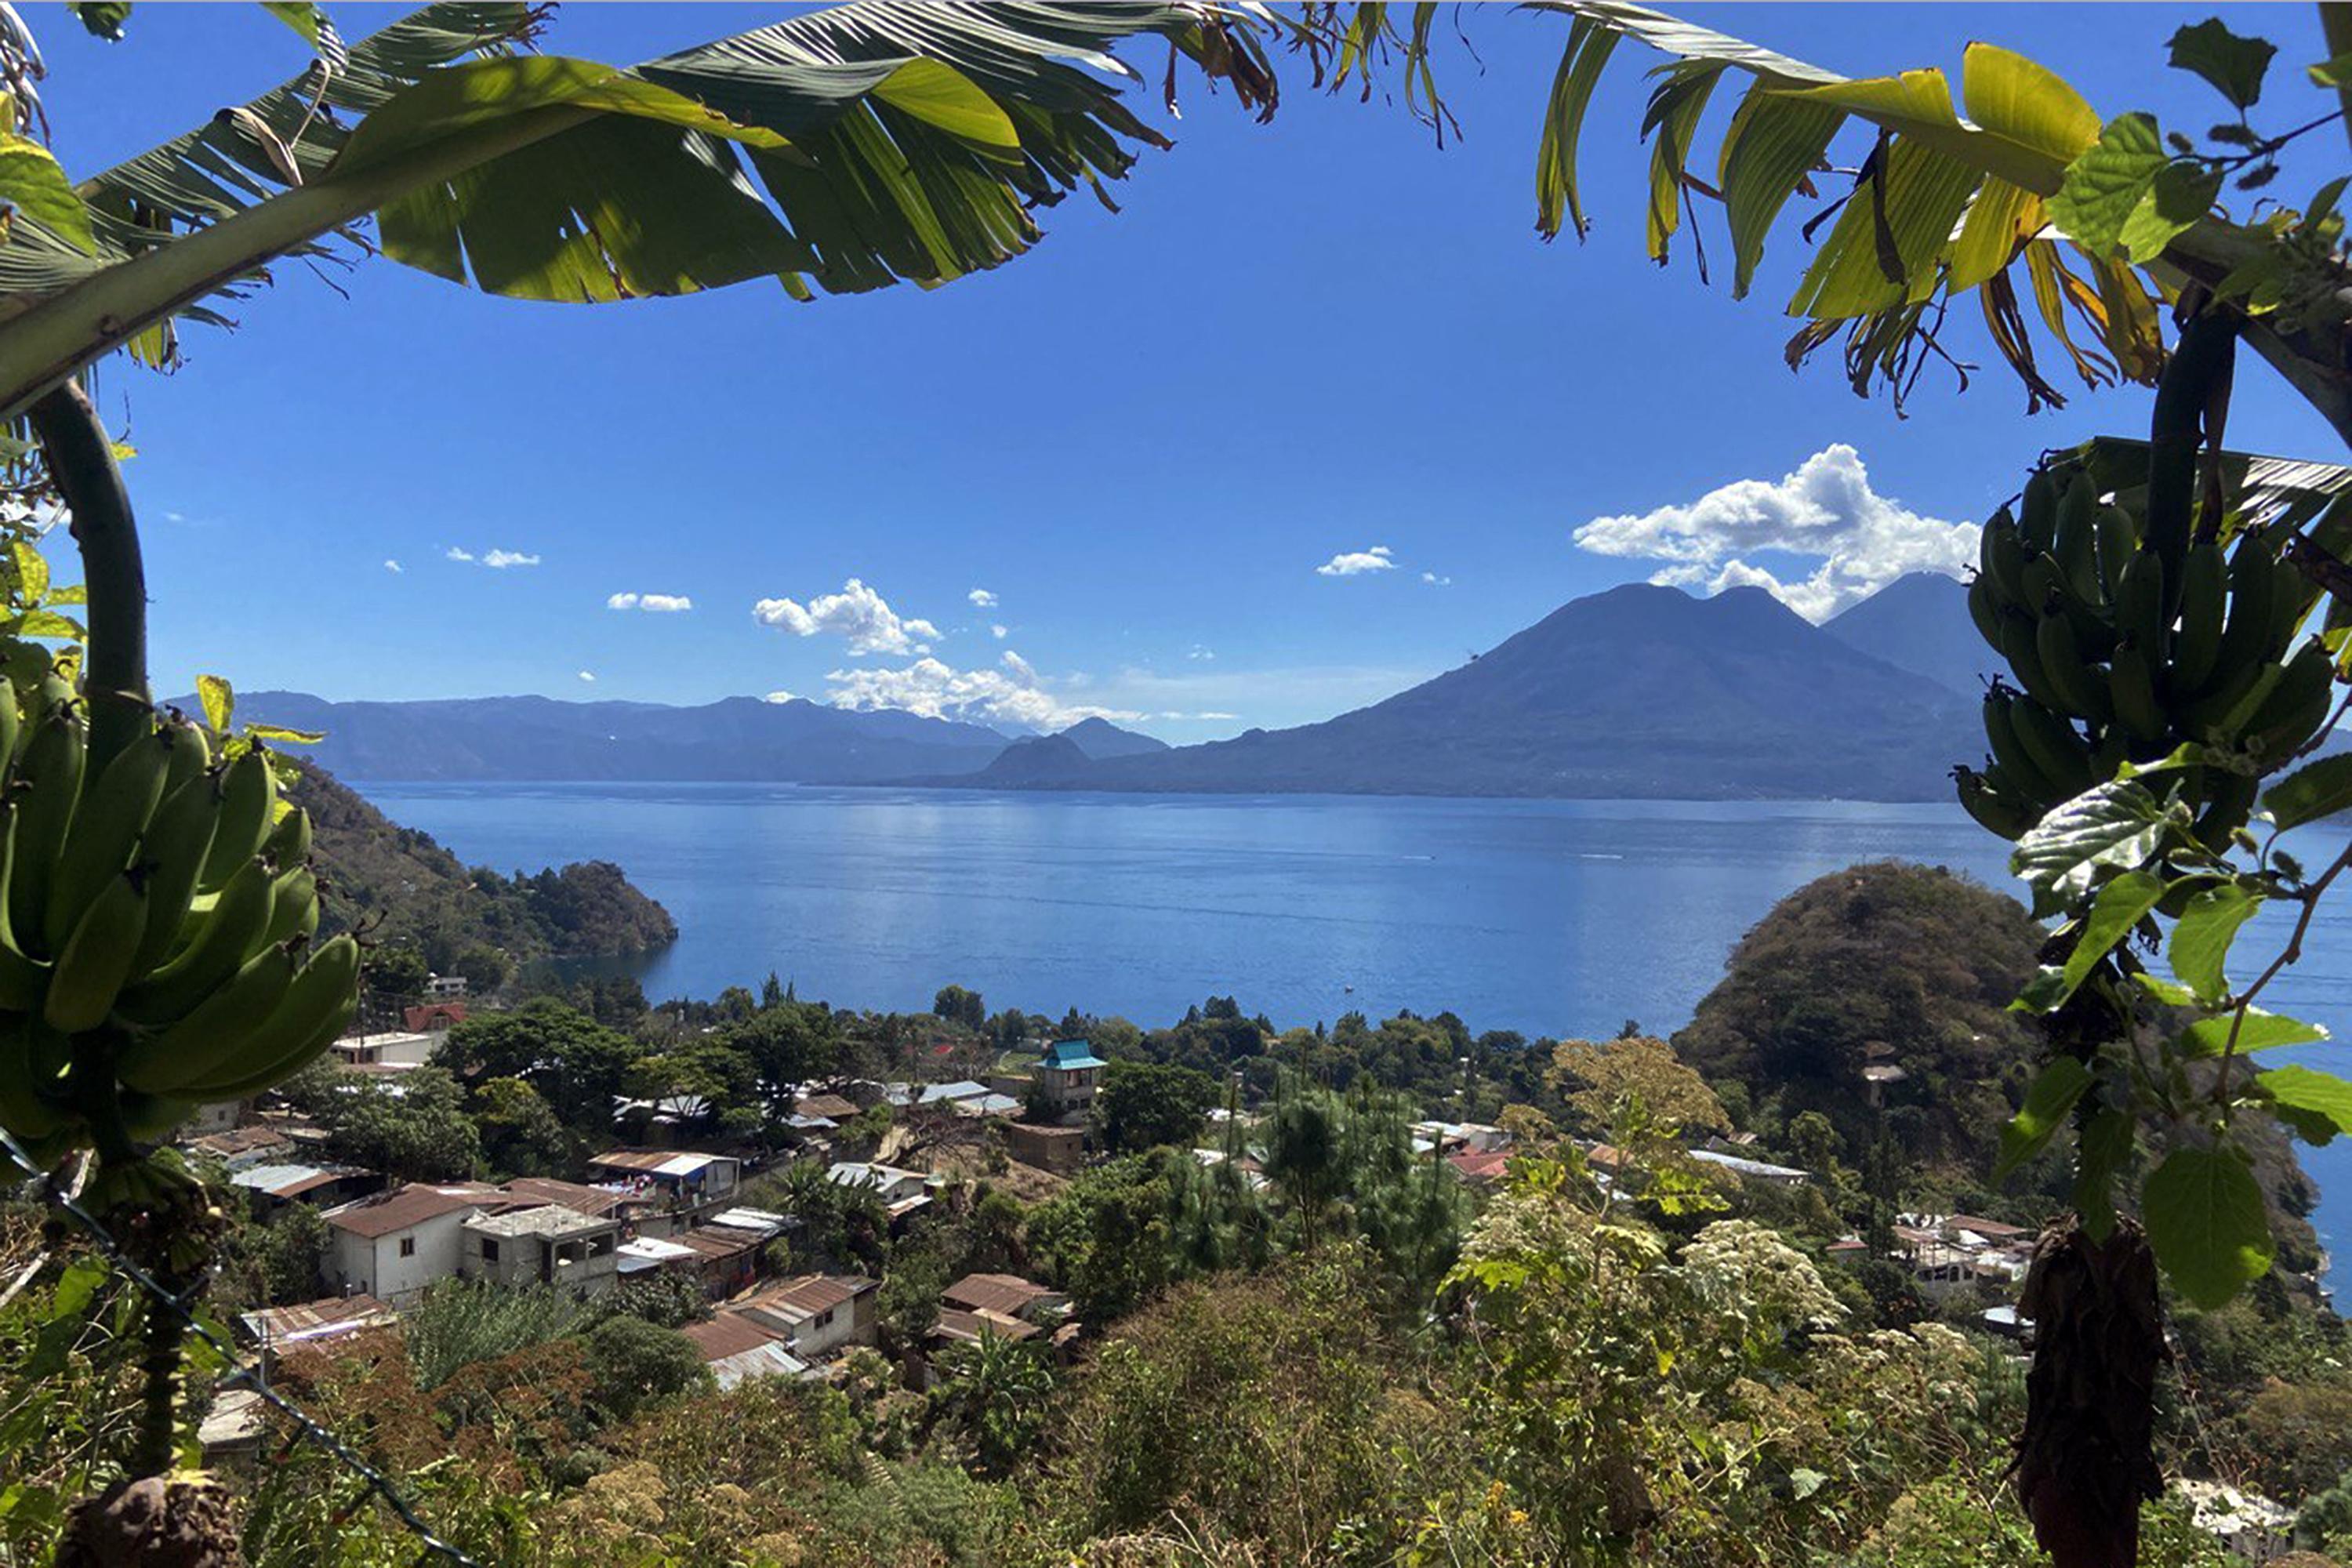 Vista del Lago Atitlán desde el Barrio 2 de San Marcos La Laguna. Los residentes kaqchikel llaman el lugar donde se tomó esta foto Tz'un Ucuy, que en español se traduce como “punta de la nariz del palo de chipilín”. Los turistas conocen el lugar por el nombre de un centro privado llamado 